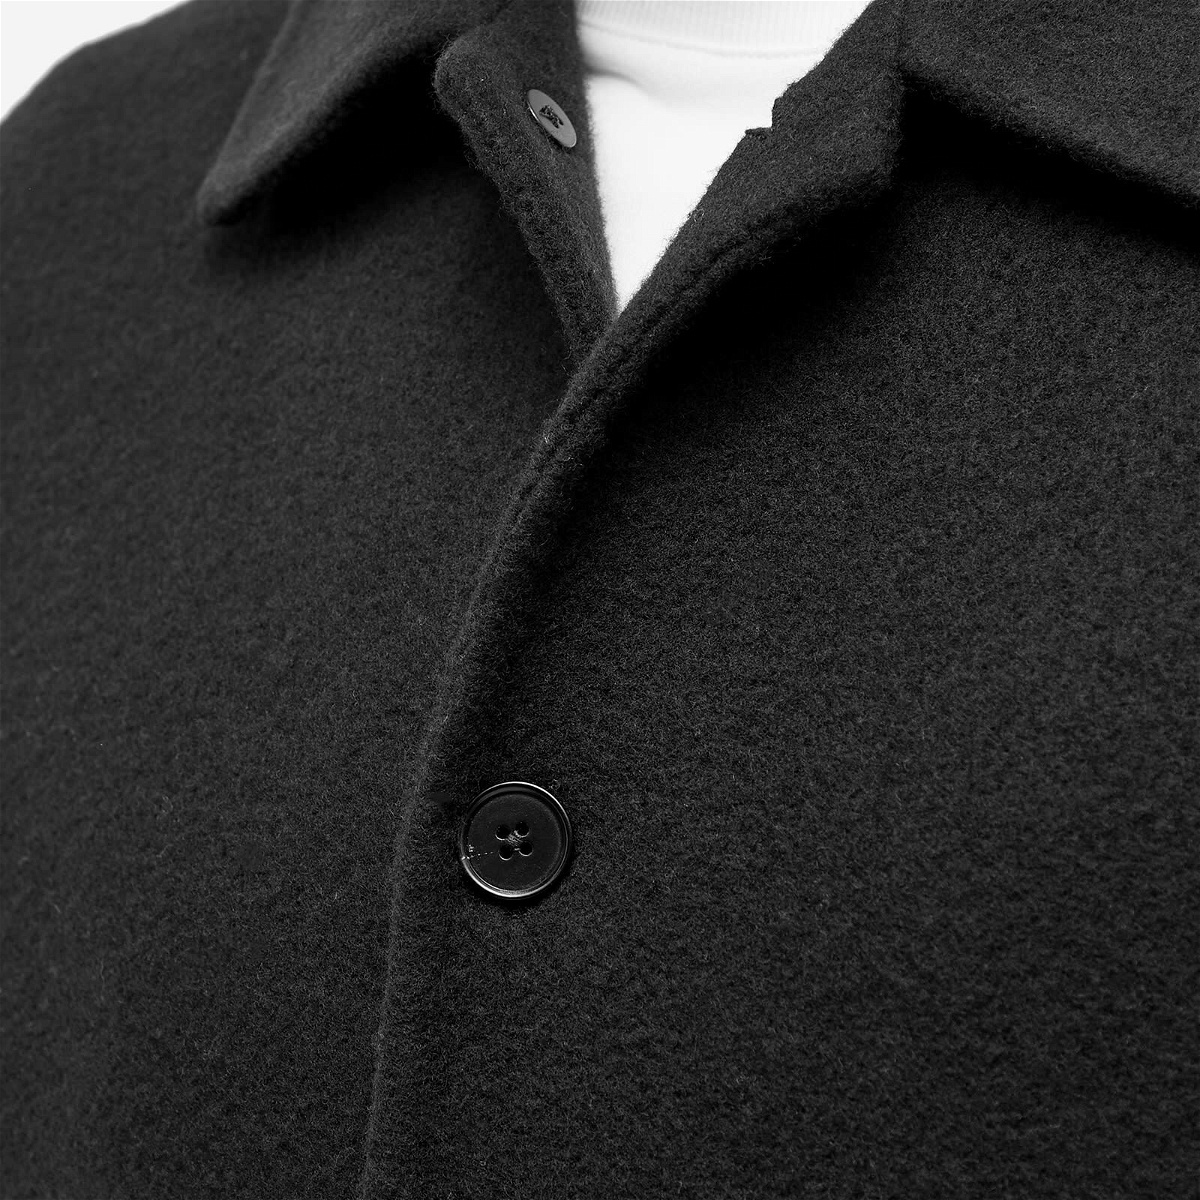 Jil Sander Men's Wool Overshirt in Black